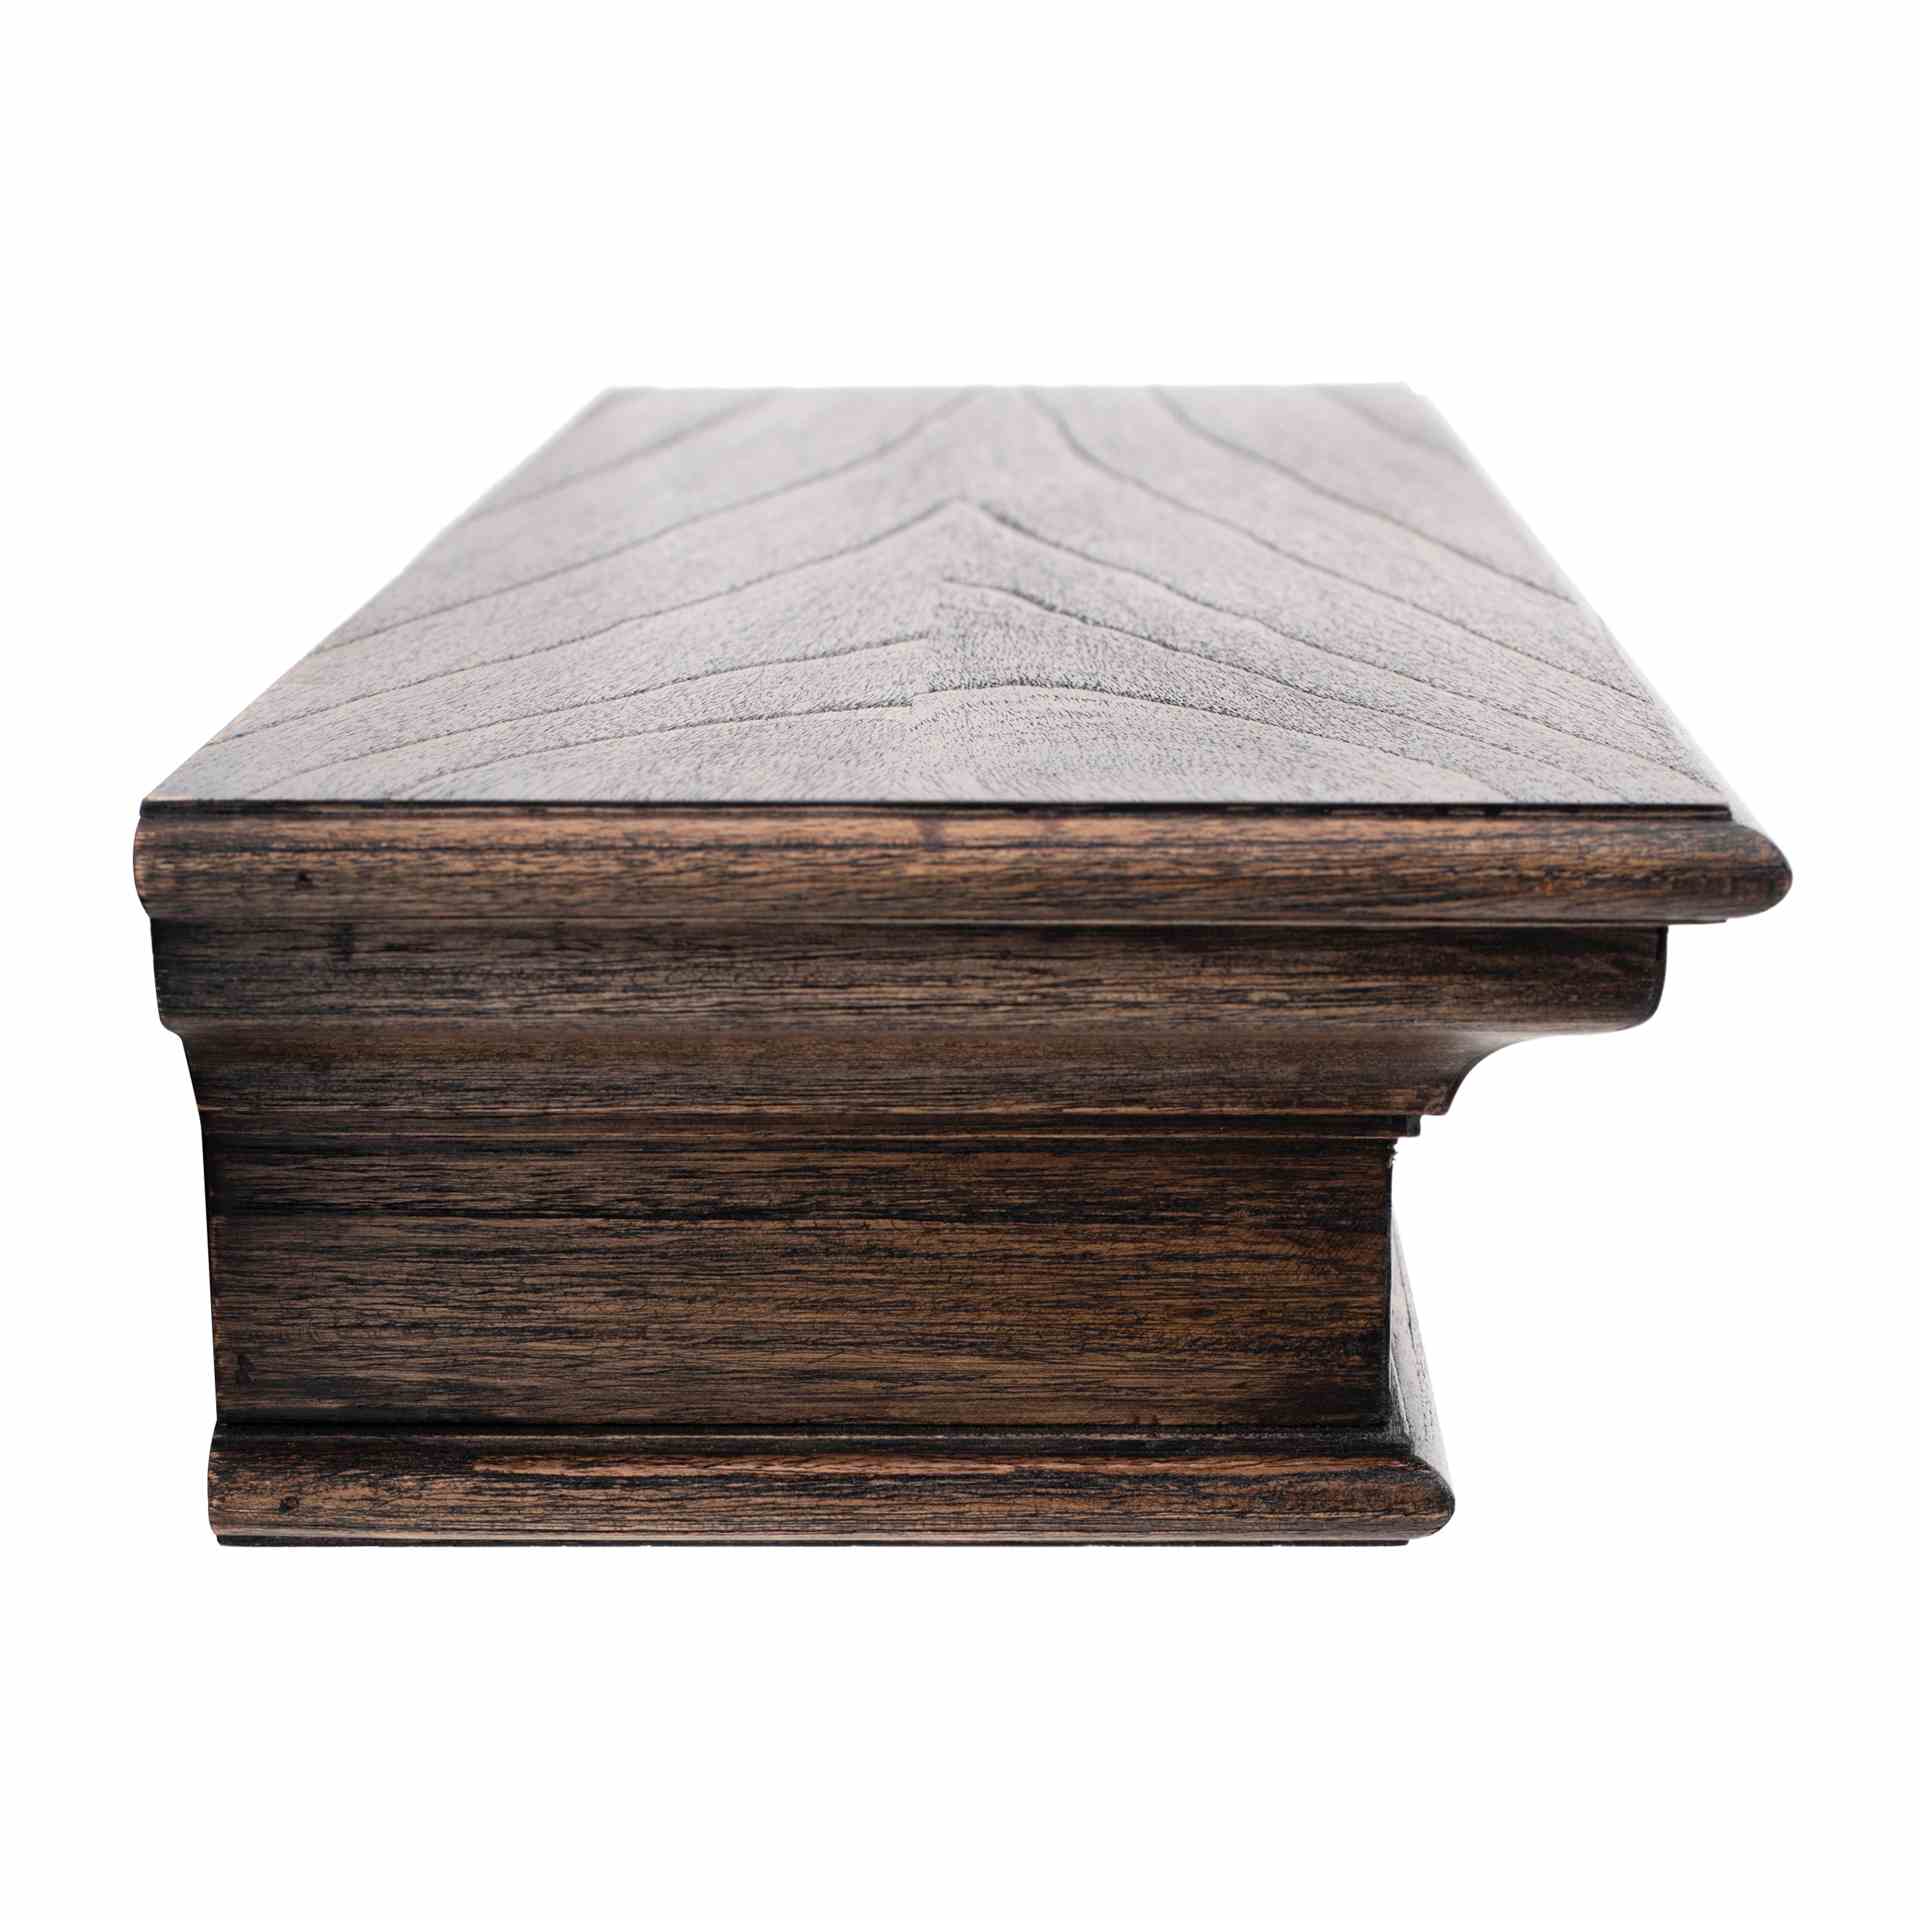 Das Wandregal Halifax Mindi überzeugt mit seinem Landhaus Stil. Gefertigt wurde es aus Mahagoni Holz, welches einen braunen Farbton besitzt. Das Regal besitzt eine Breite von 80 cm.